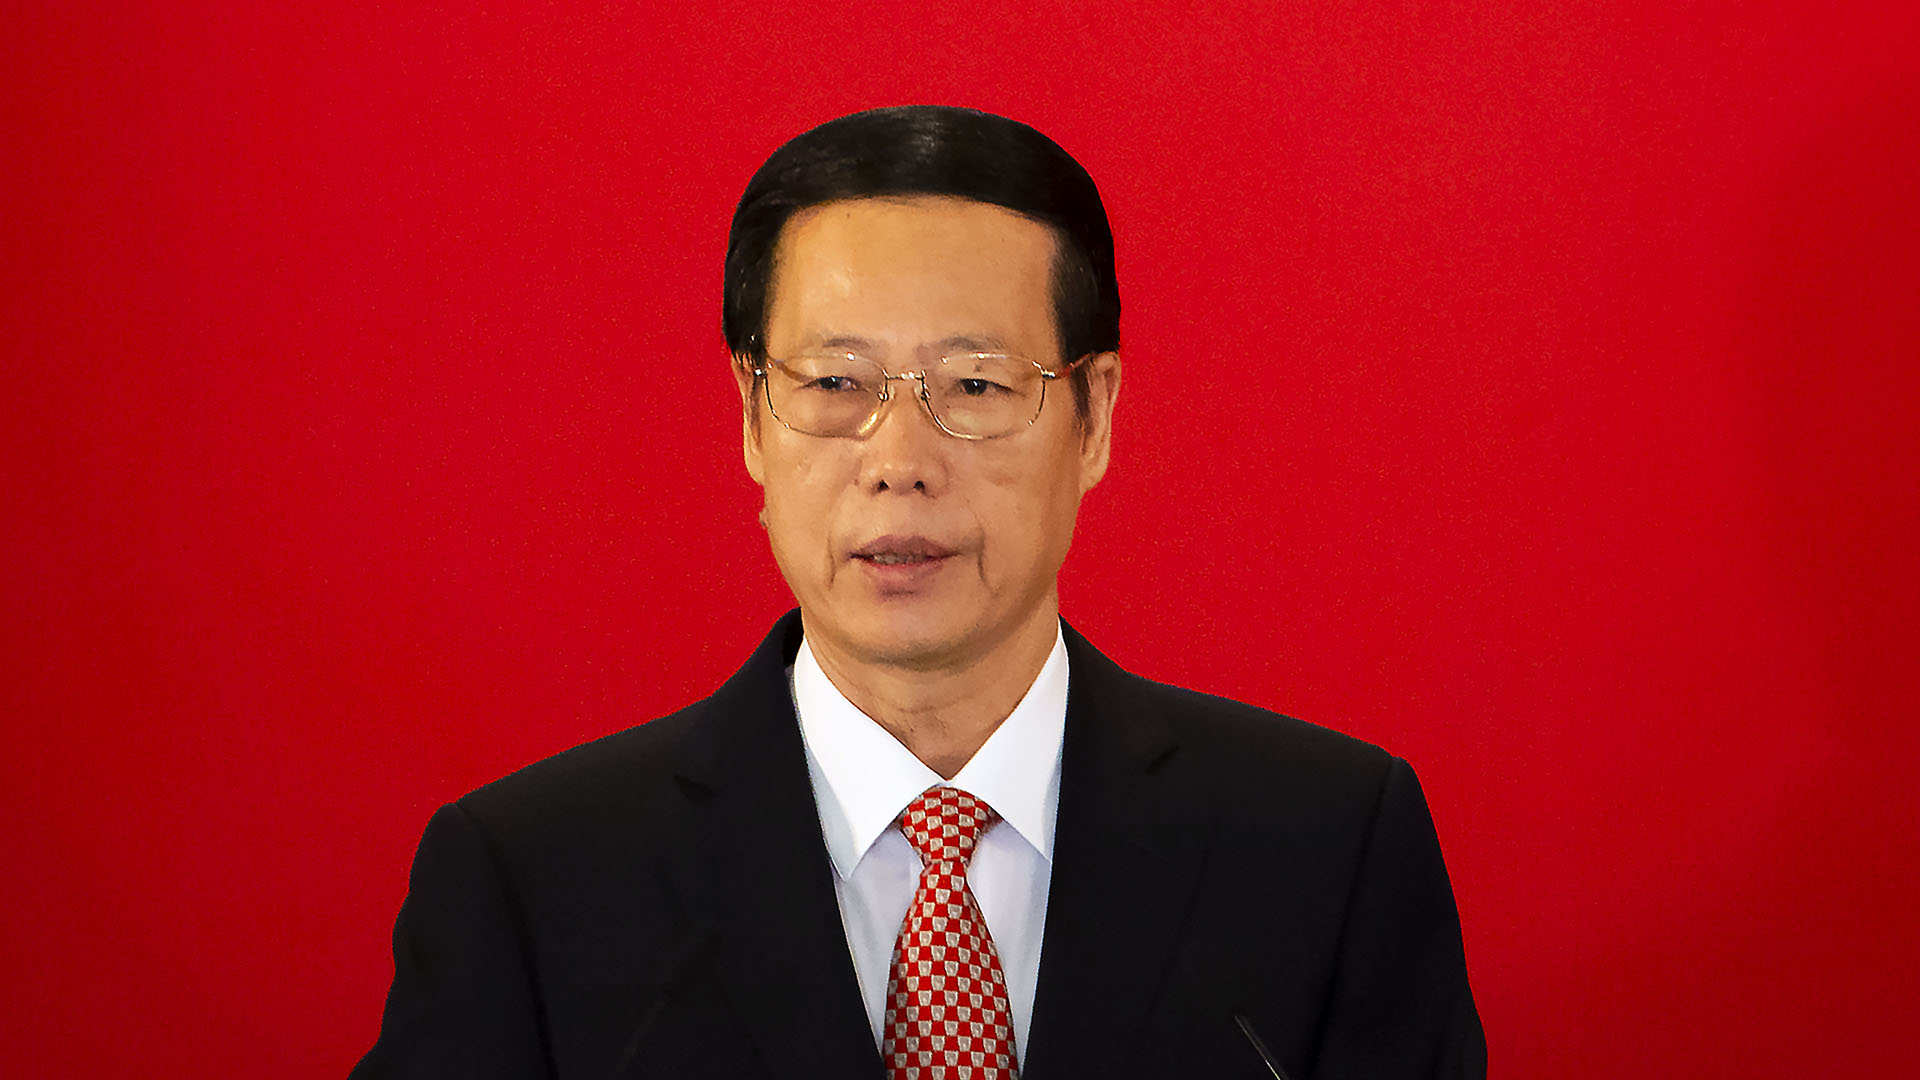 El ex Vice Premier chino Zhang Gaoli está acusado de haber forzado a Peng Shuai a tener sexo no consentido con él. En la fotografía, durante una cumbre en Beijing (AP)